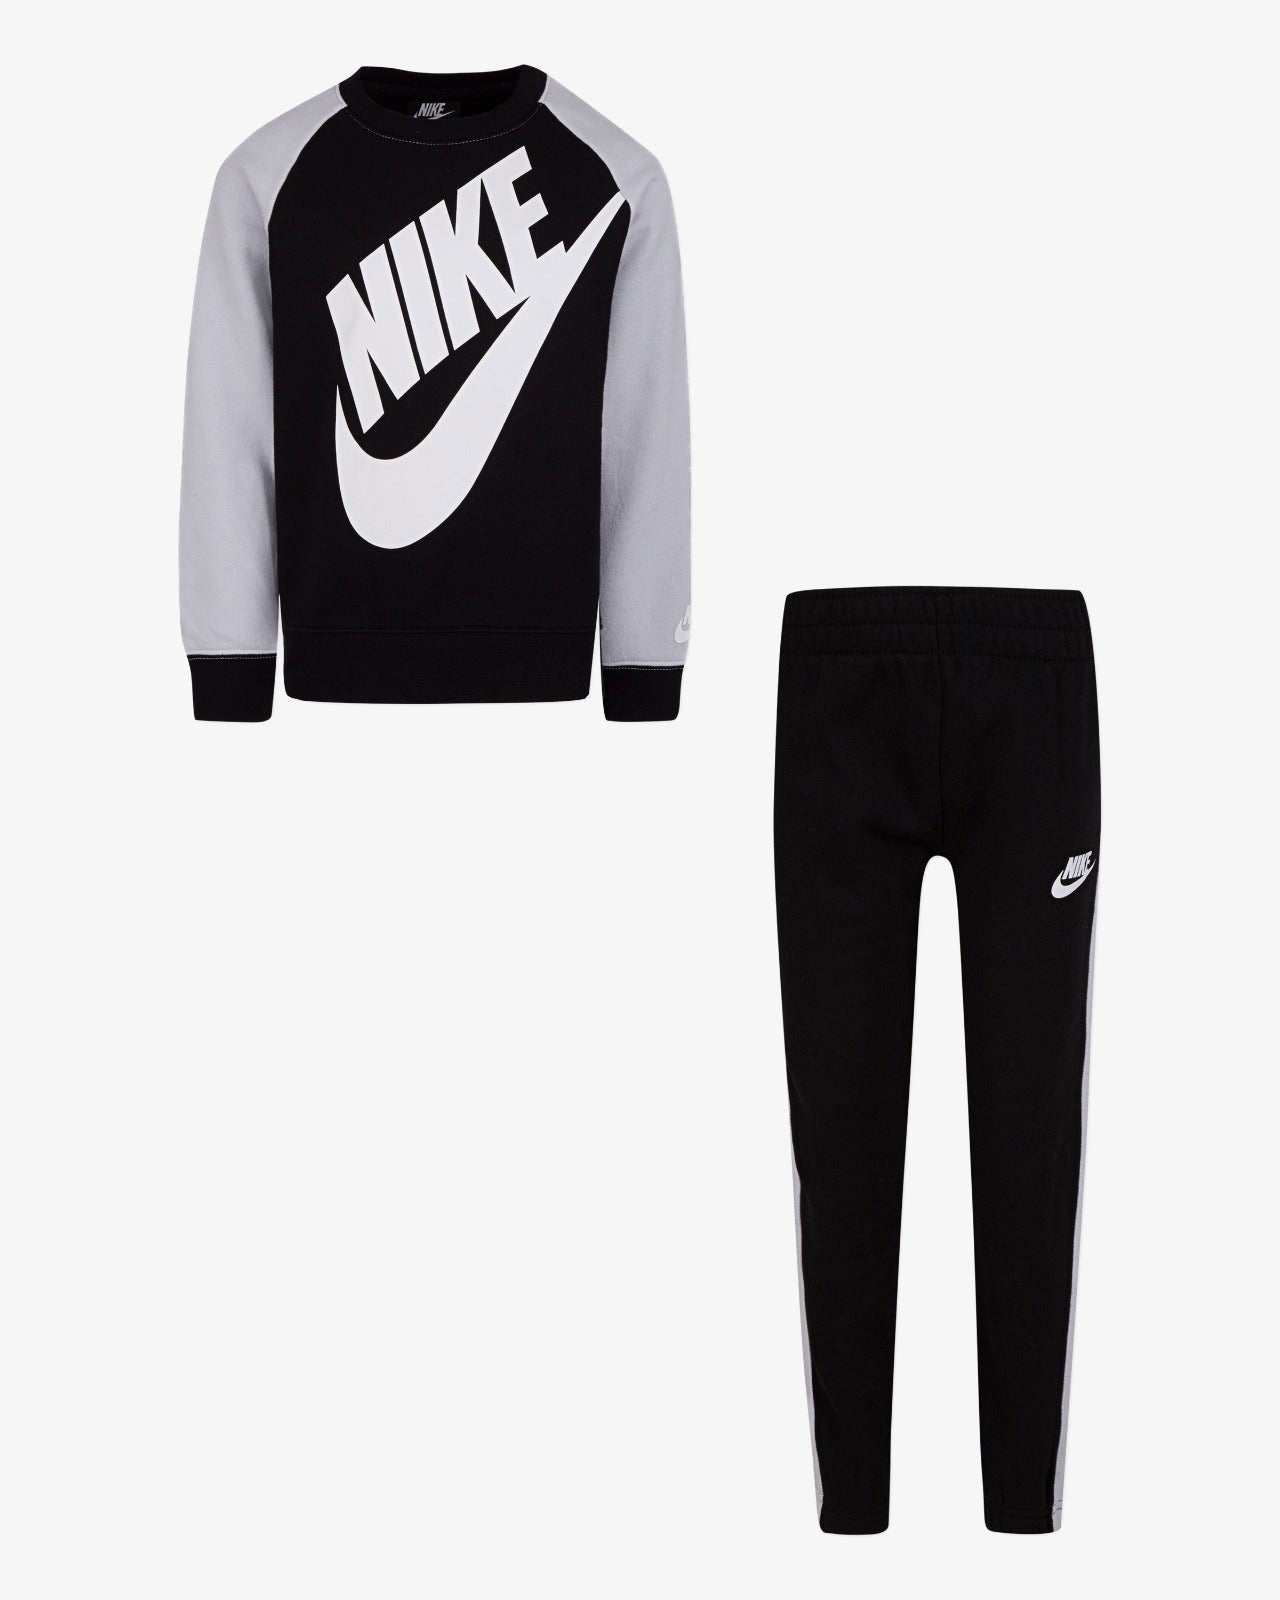 – Footkorner und Kinder-Set Sweatshirt – Nike Hose Schwarz/Weiß aus Sportswear